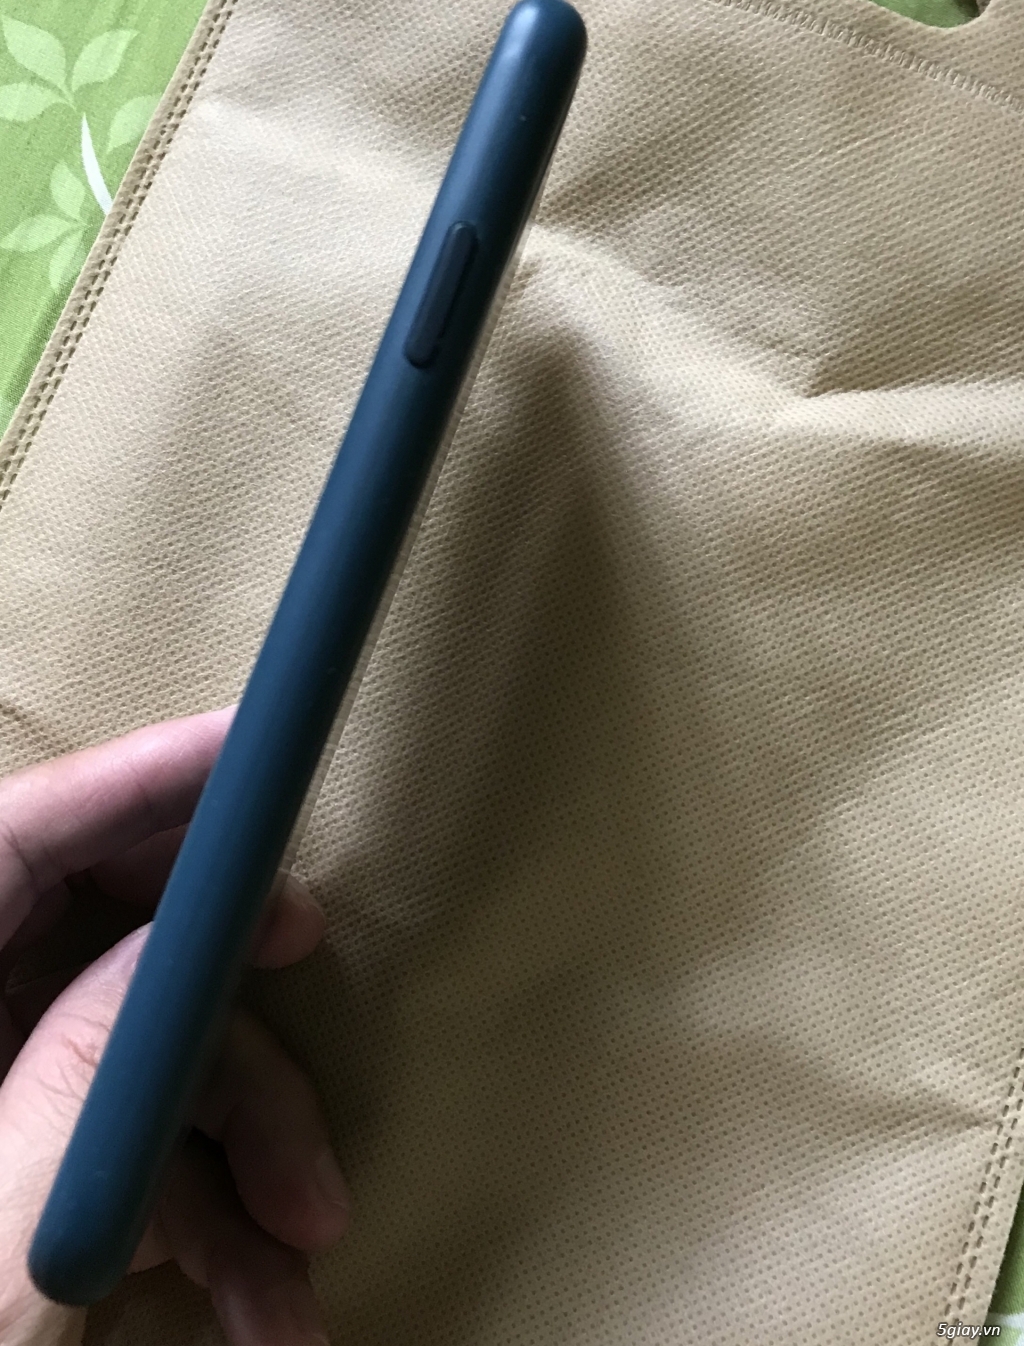 Ốp lưng iphone xsmax màu xanh dương - 2